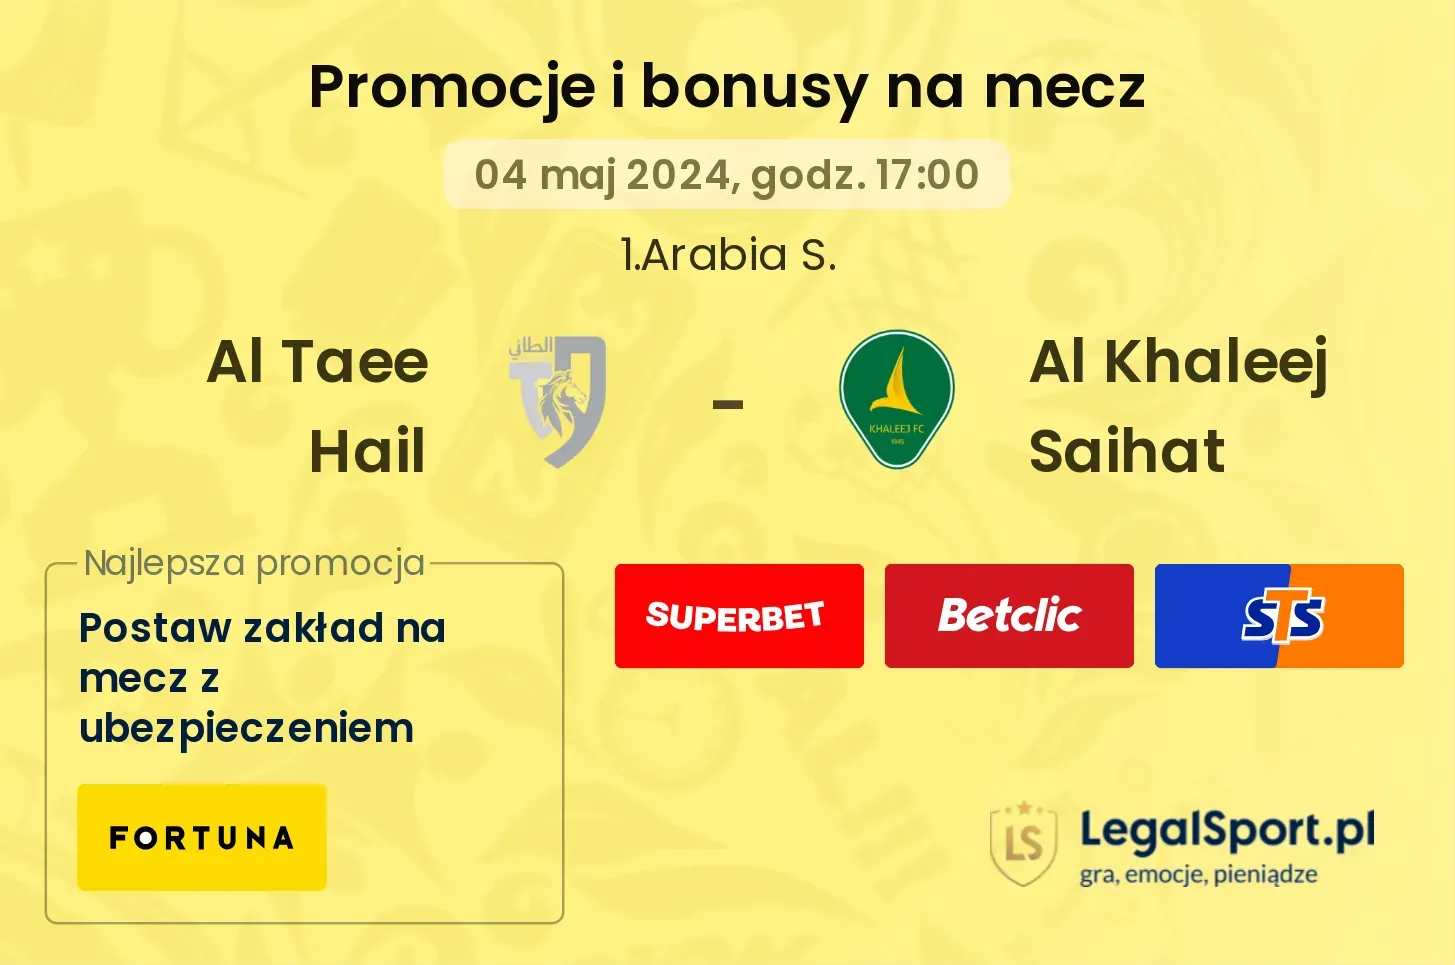 Al Taee Hail - Al Khaleej Saihat promocje bonusy na mecz